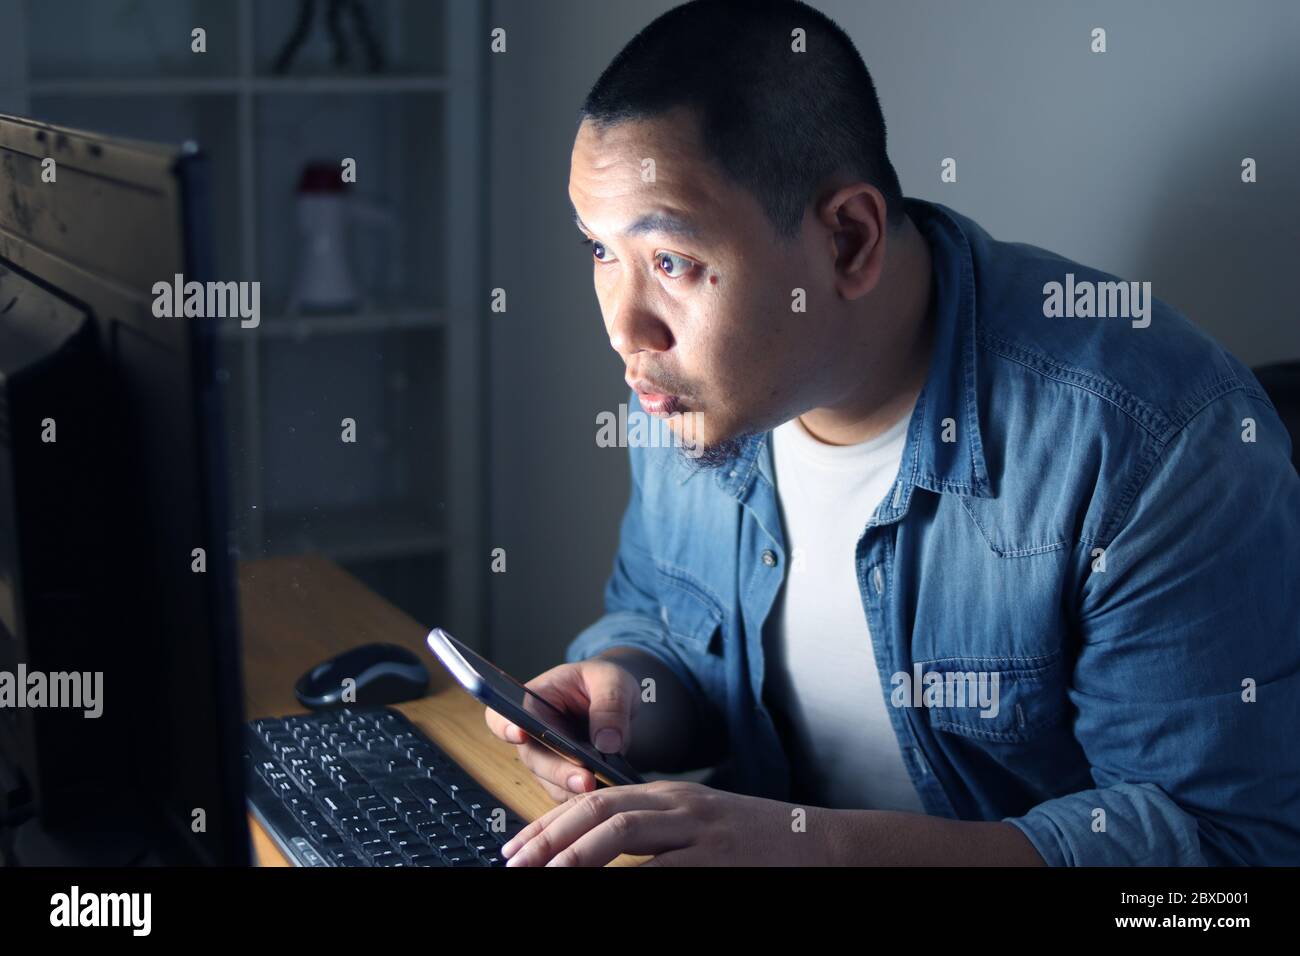 Junger asiatischer Mann mit Smartphone und Computer bis spät in die Nacht, er arbeitet oder studiert hart, um seine Ambition zu erreichen. Student oder Geschäftsmann arbeitet ha Stockfoto